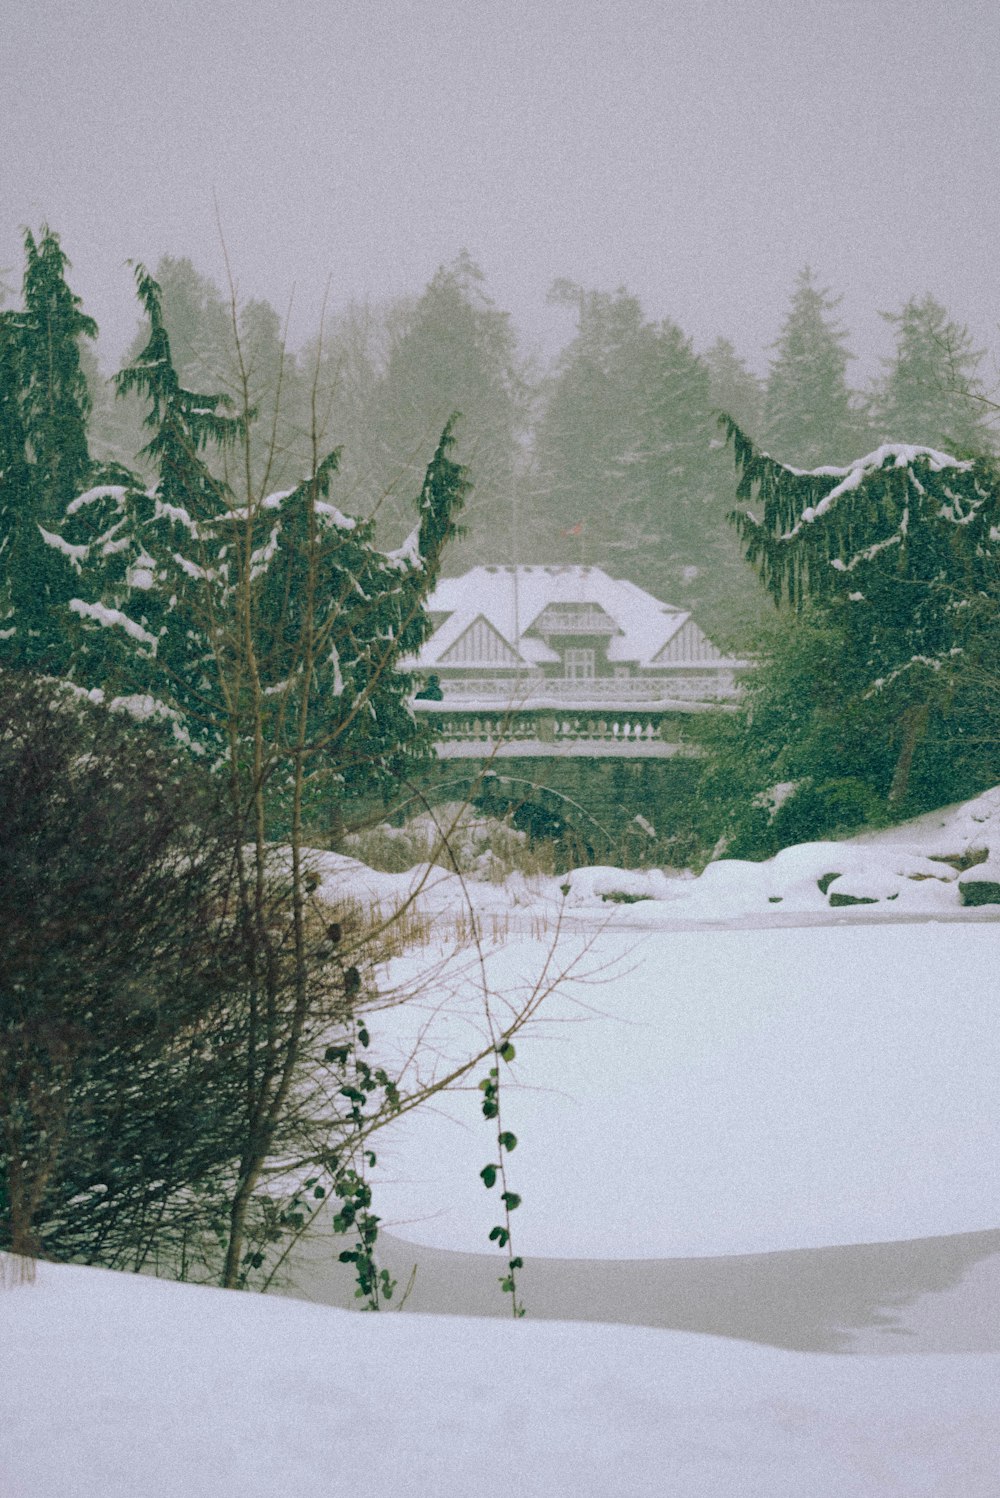 Weißes und braunes Haus auf schneebedecktem Boden